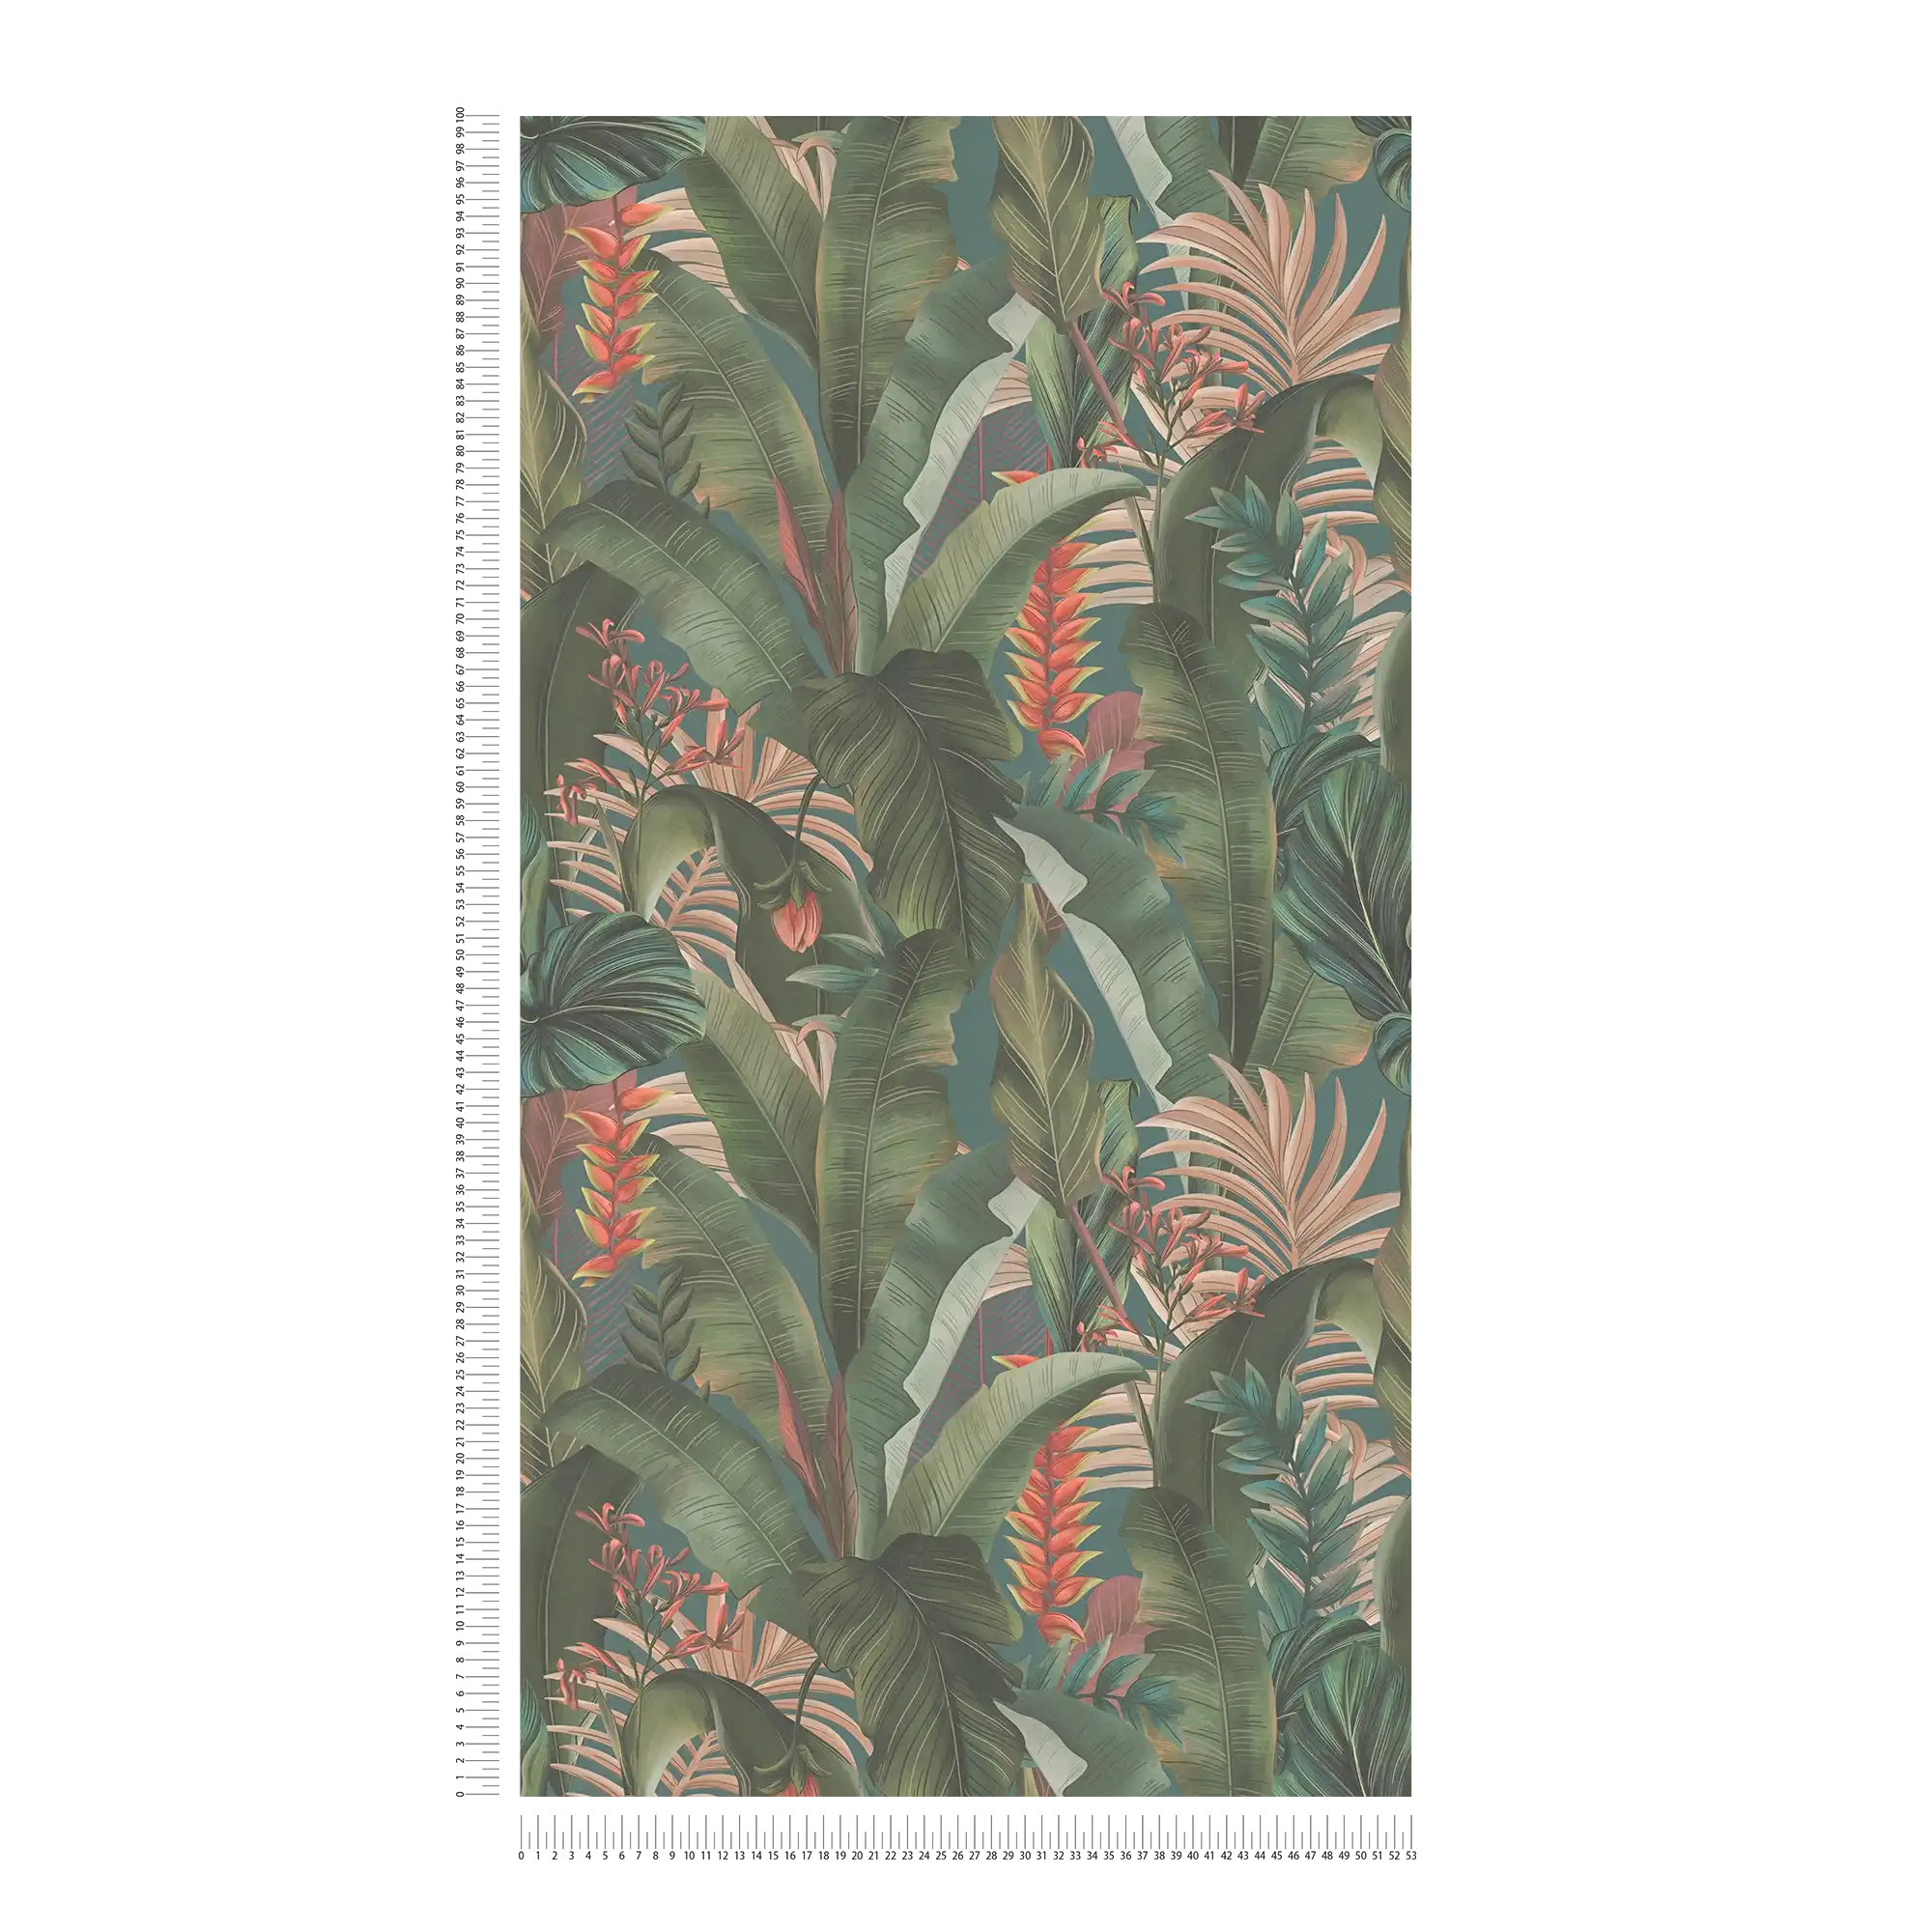             Carta da parati Jungle floreale con foglie di palma e fiori, opaca e testurizzata - blu, petrolio, verde
        